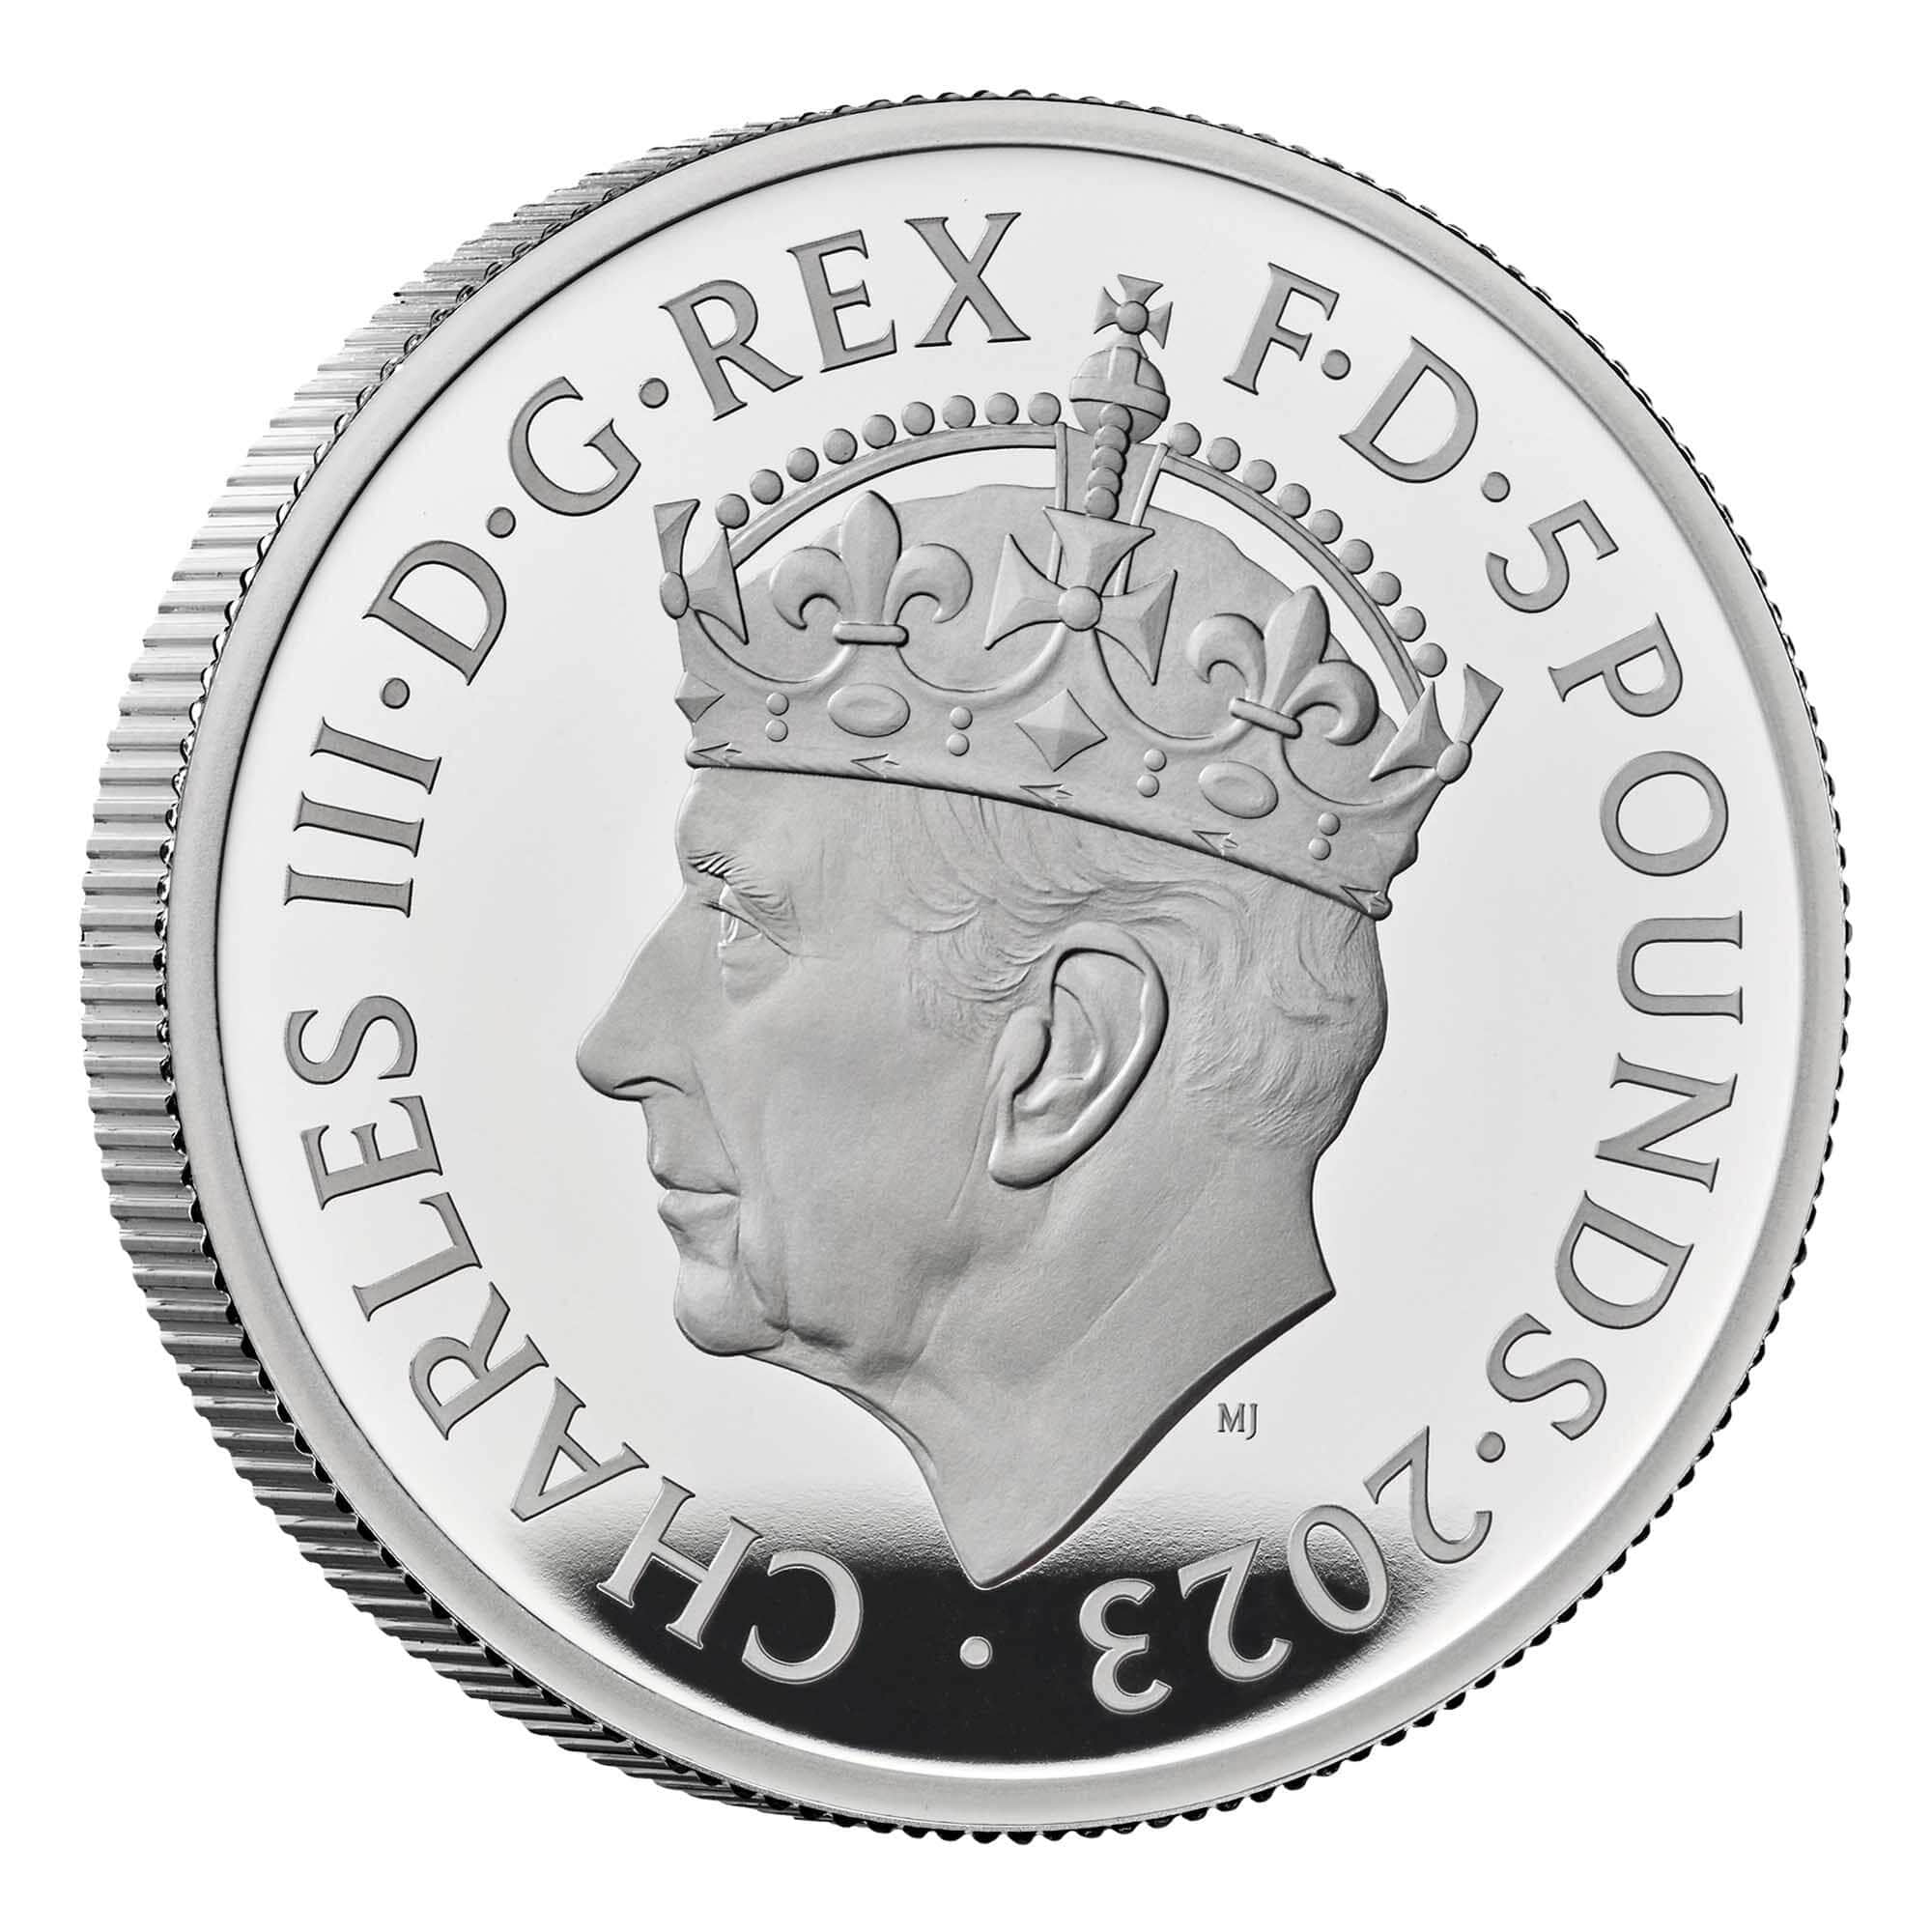 2023 チャールズ3世 戴冠式記念コイン 5£プルーフ銀貨【限定12,500枚